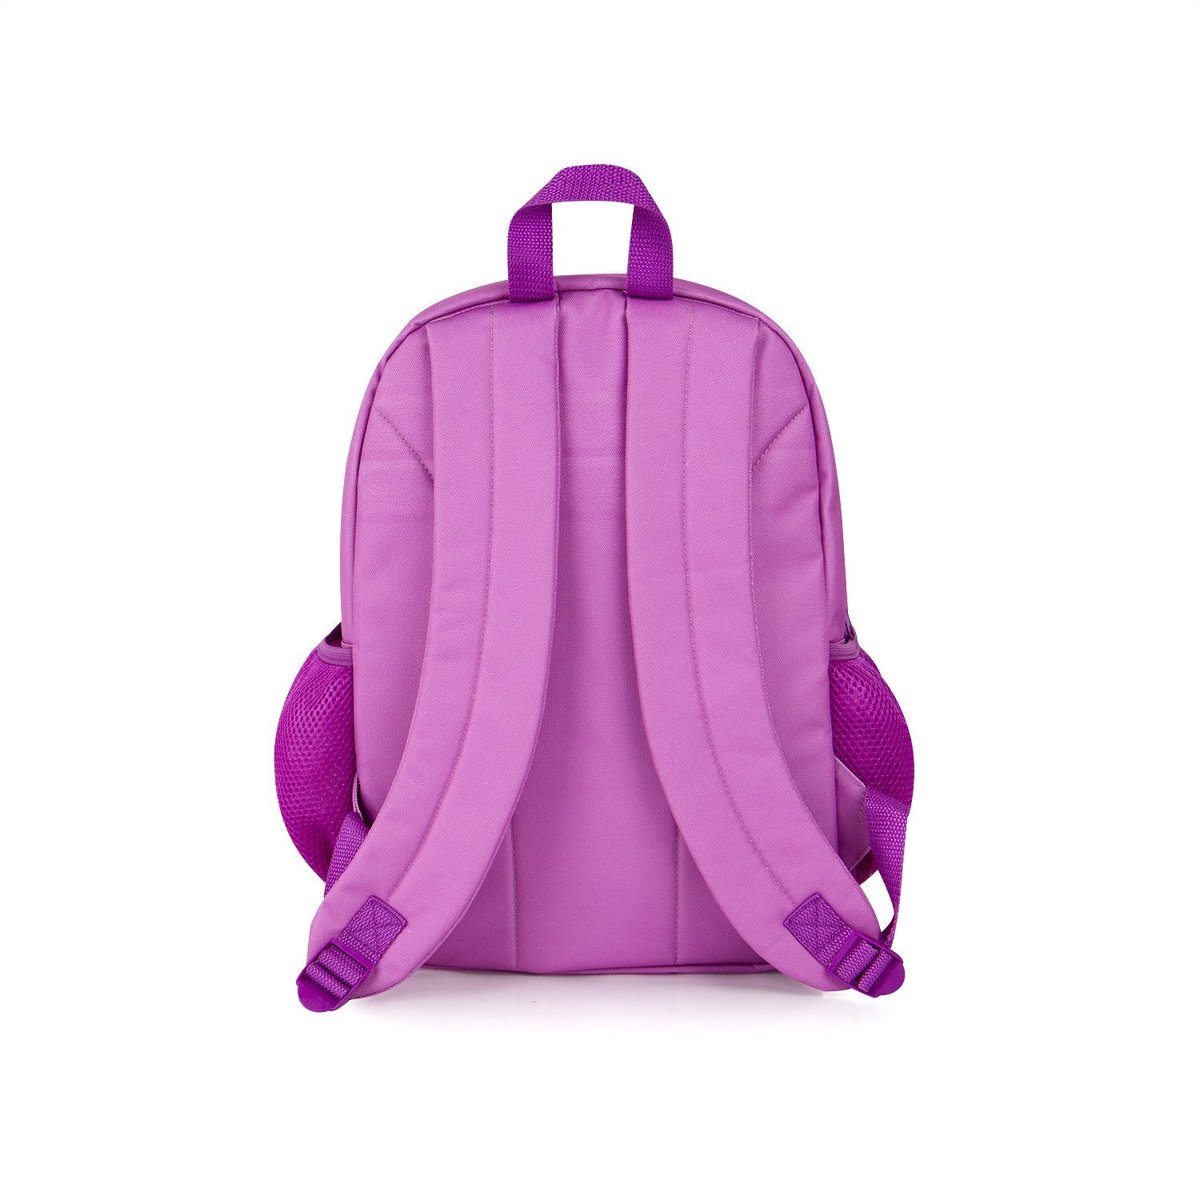 Heys - Paw Patrol-Pink Backpack